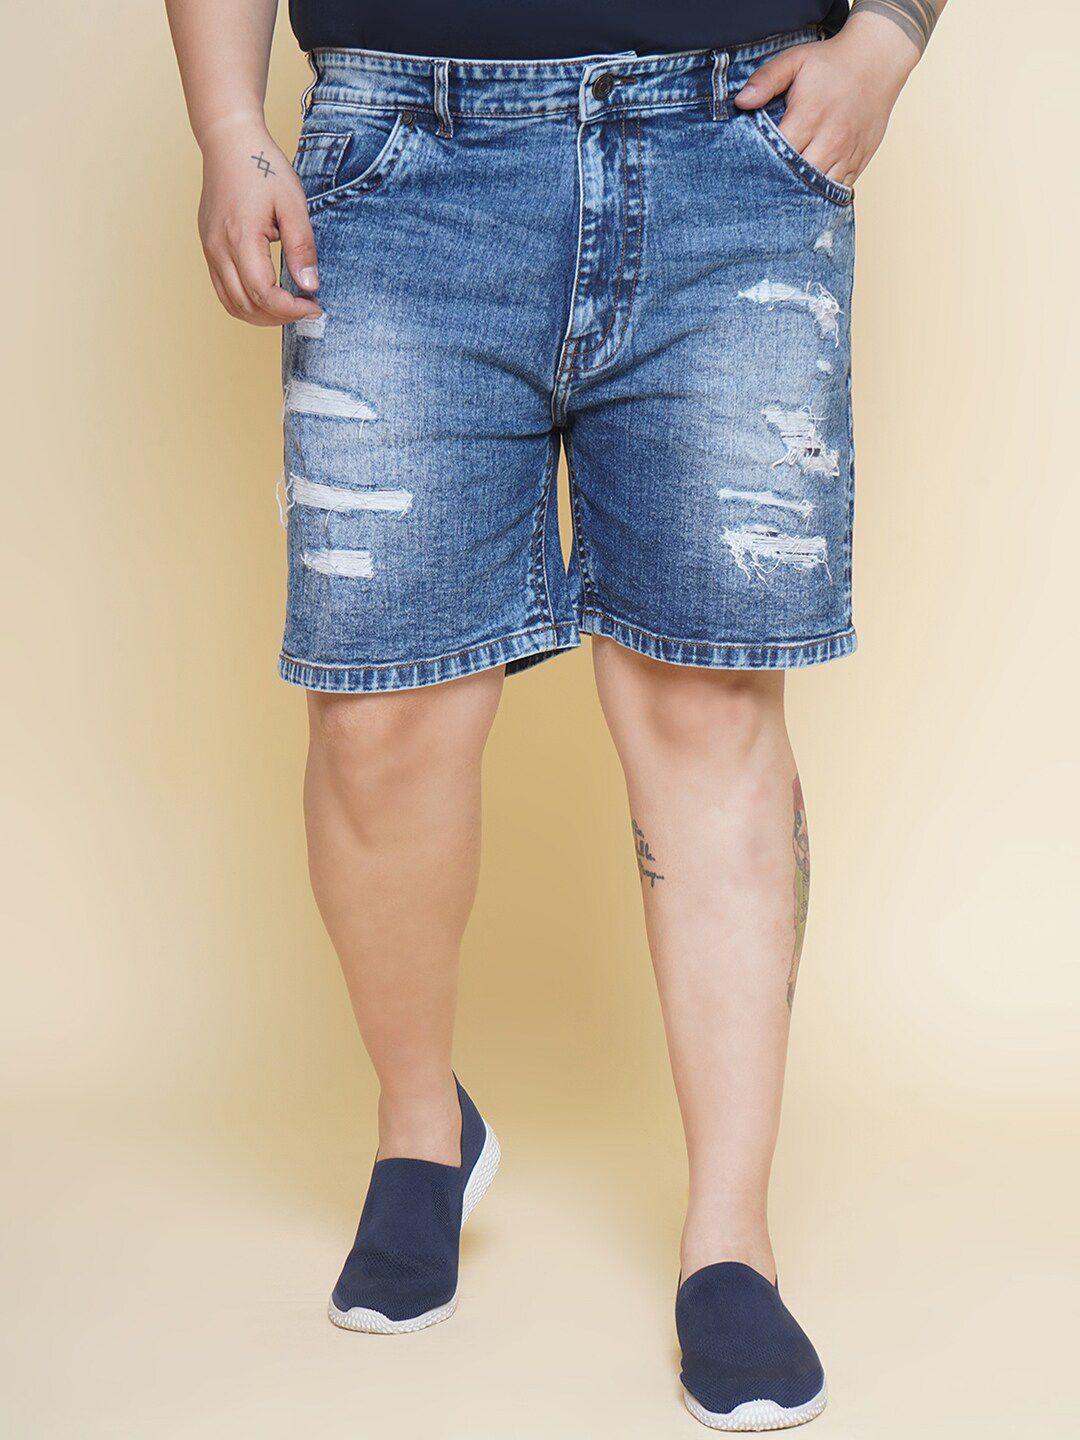 john-pride-men-plus-size-washed-distressed-denim-shorts